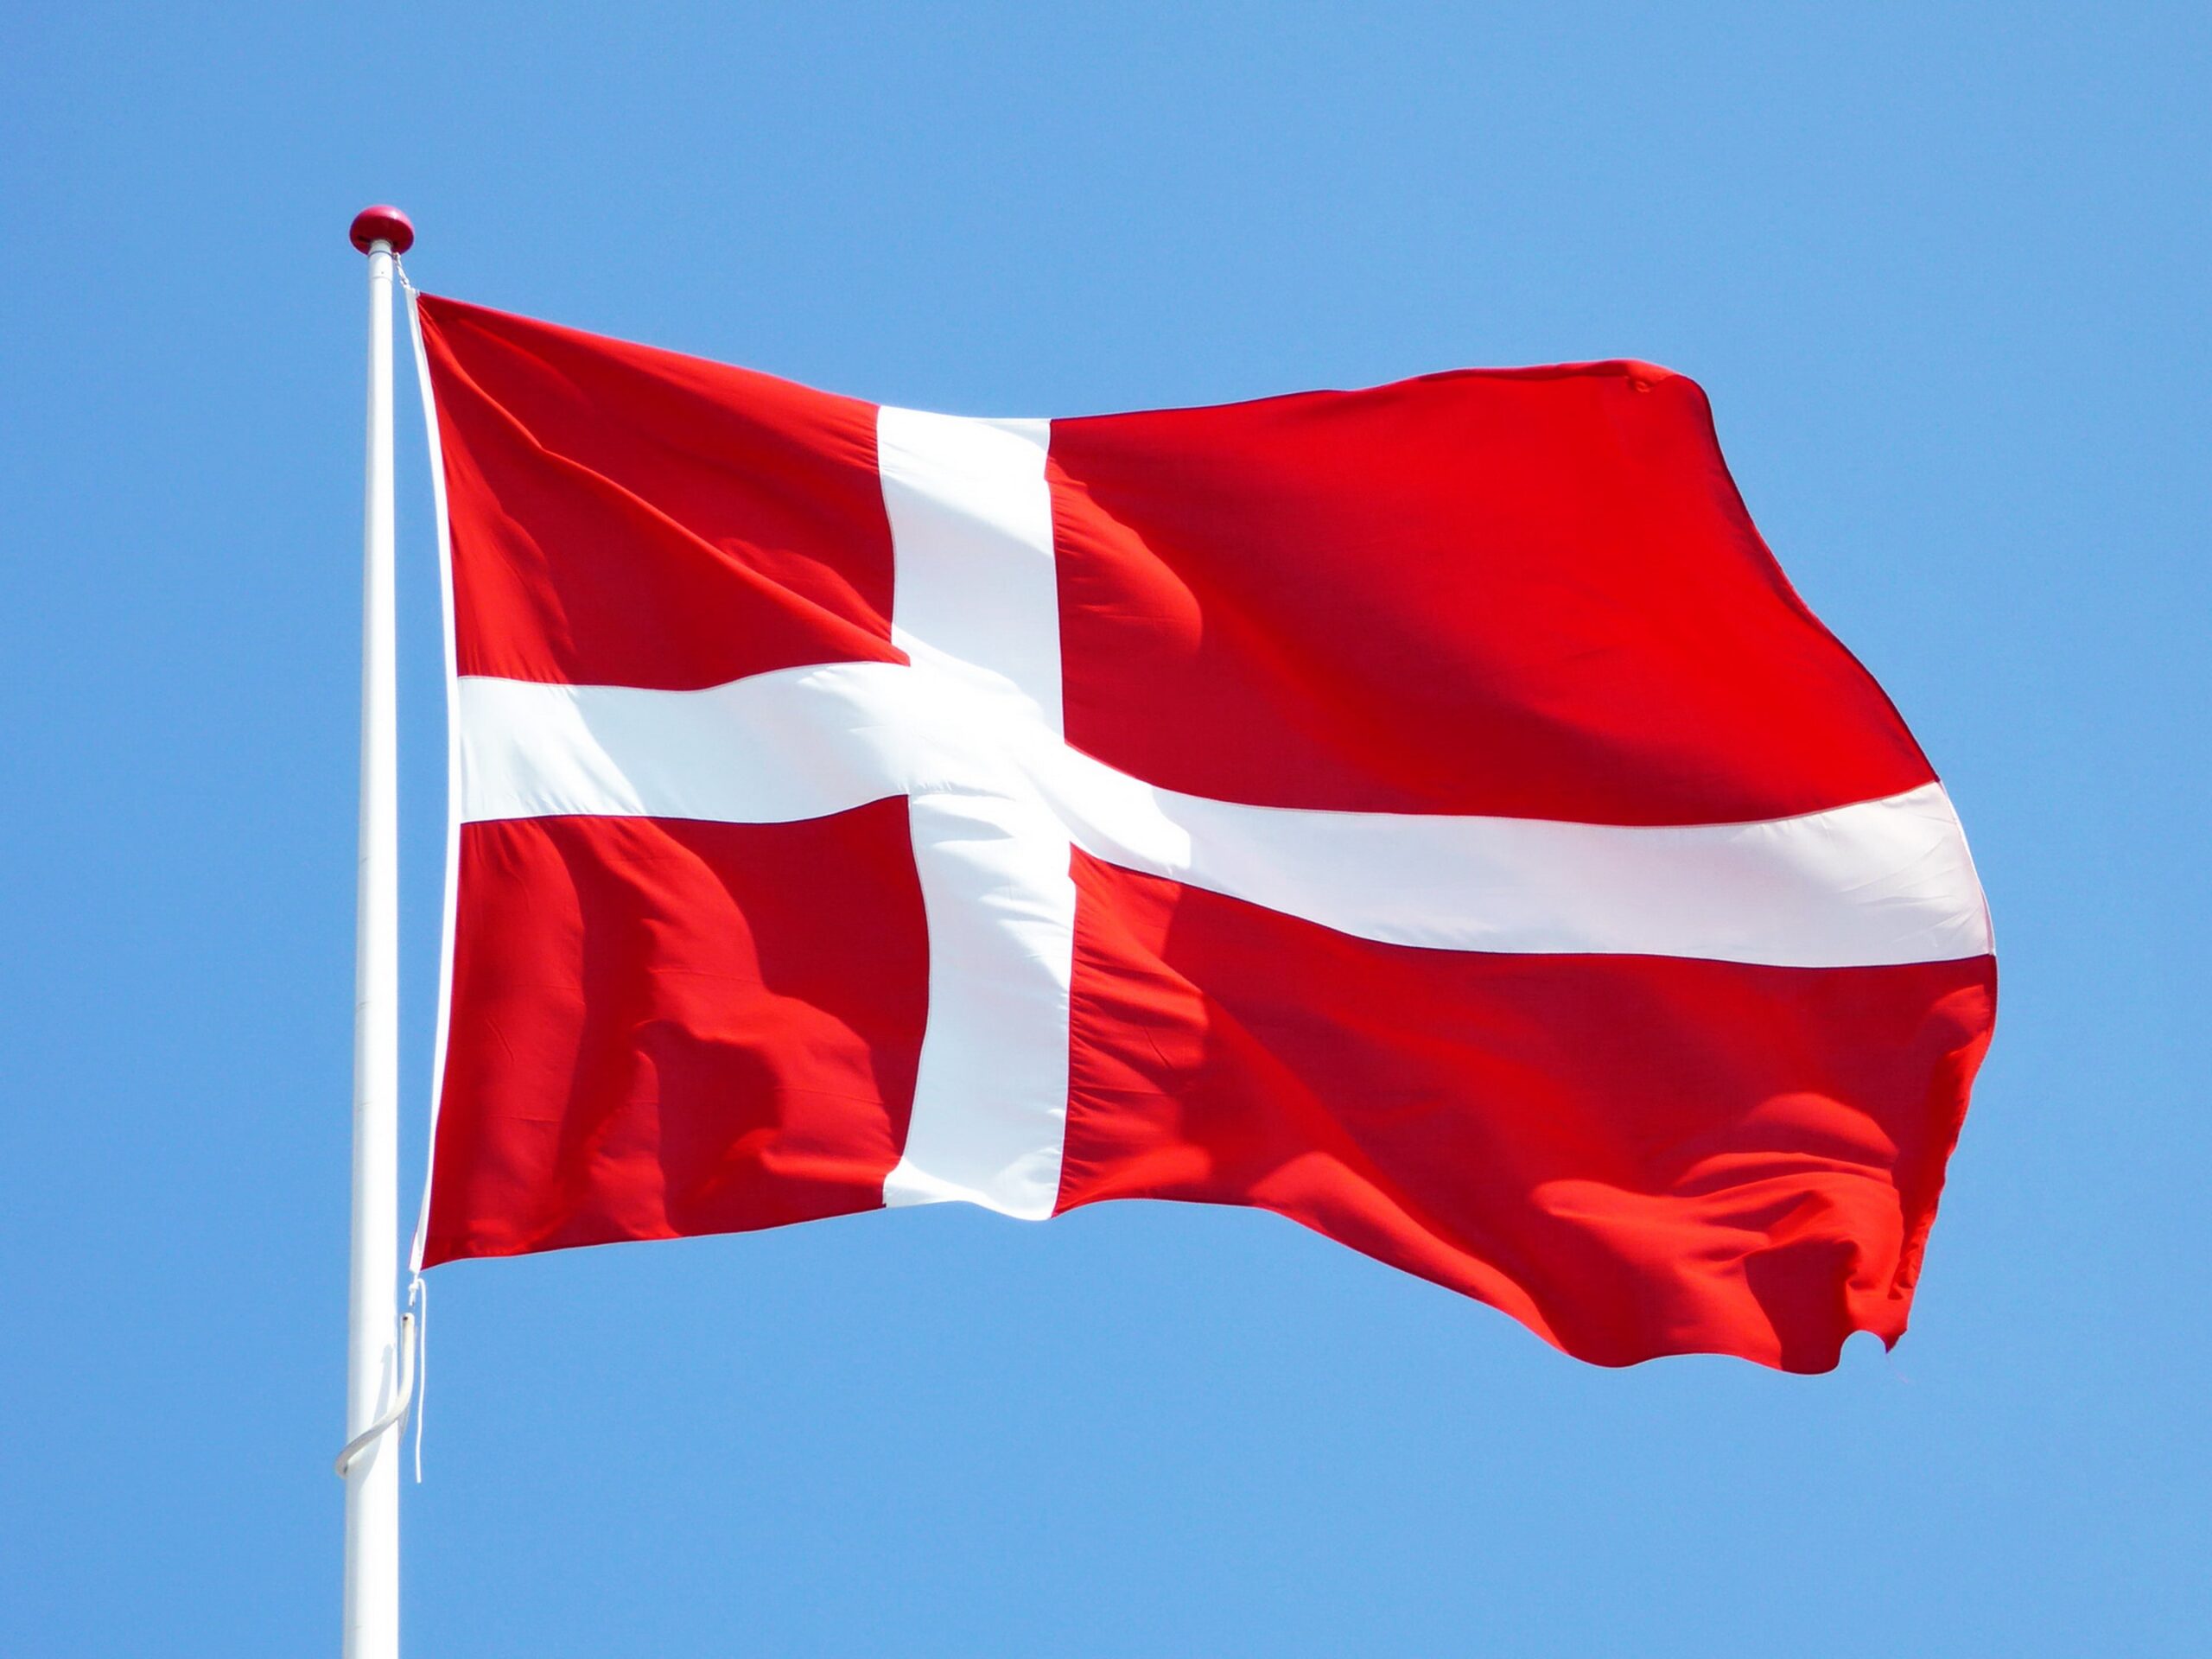 A Dinamarca tem sido uma das seleções de mais destaque no futebol europeu. Confira quais são alguns dos melhores jogadores da Dinamarca.